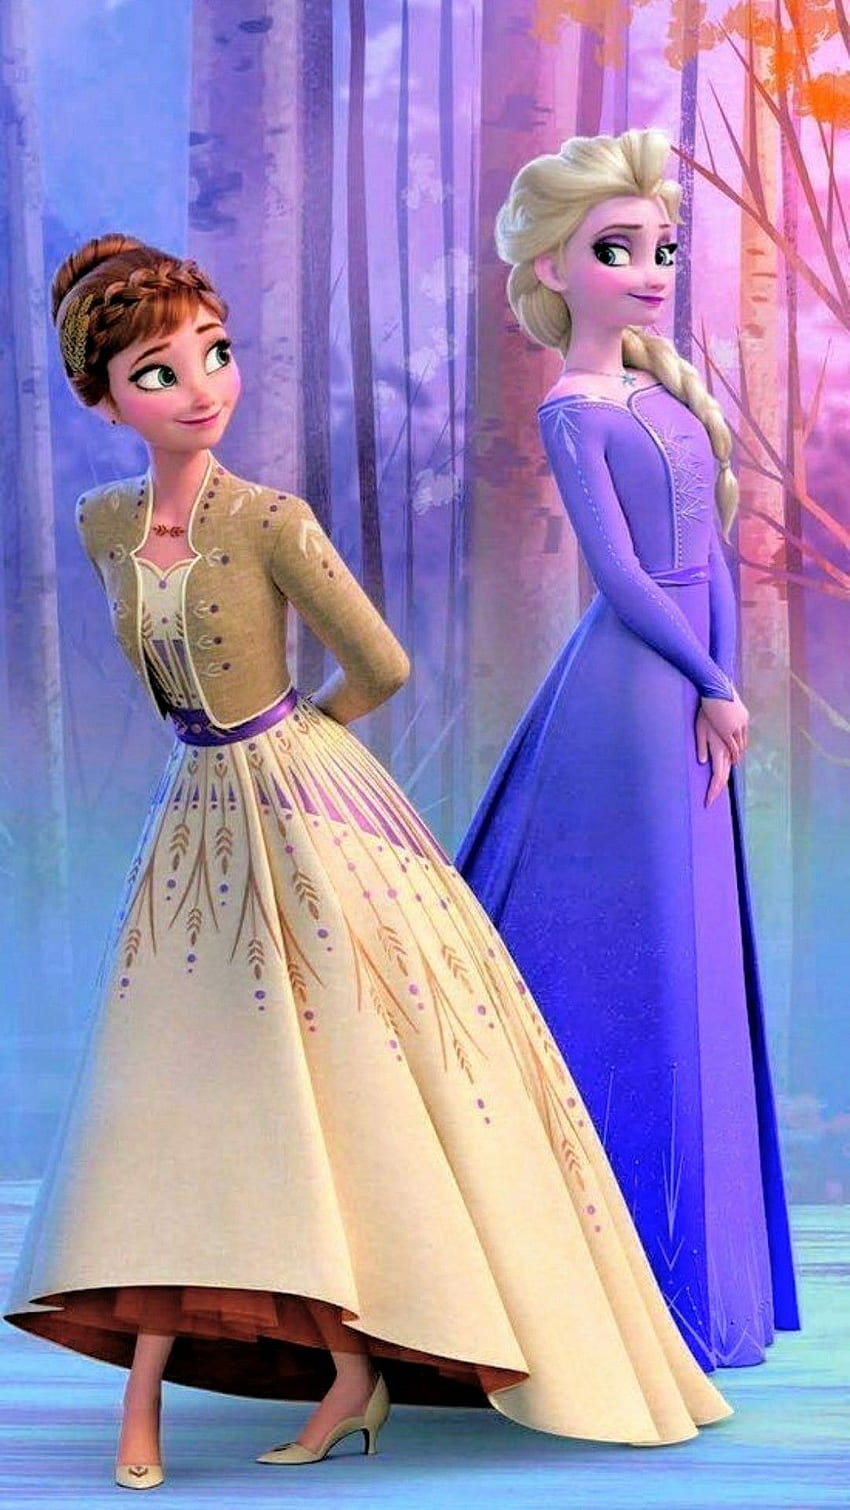 49 Elsa and Anna Wallpapers  WallpaperSafari